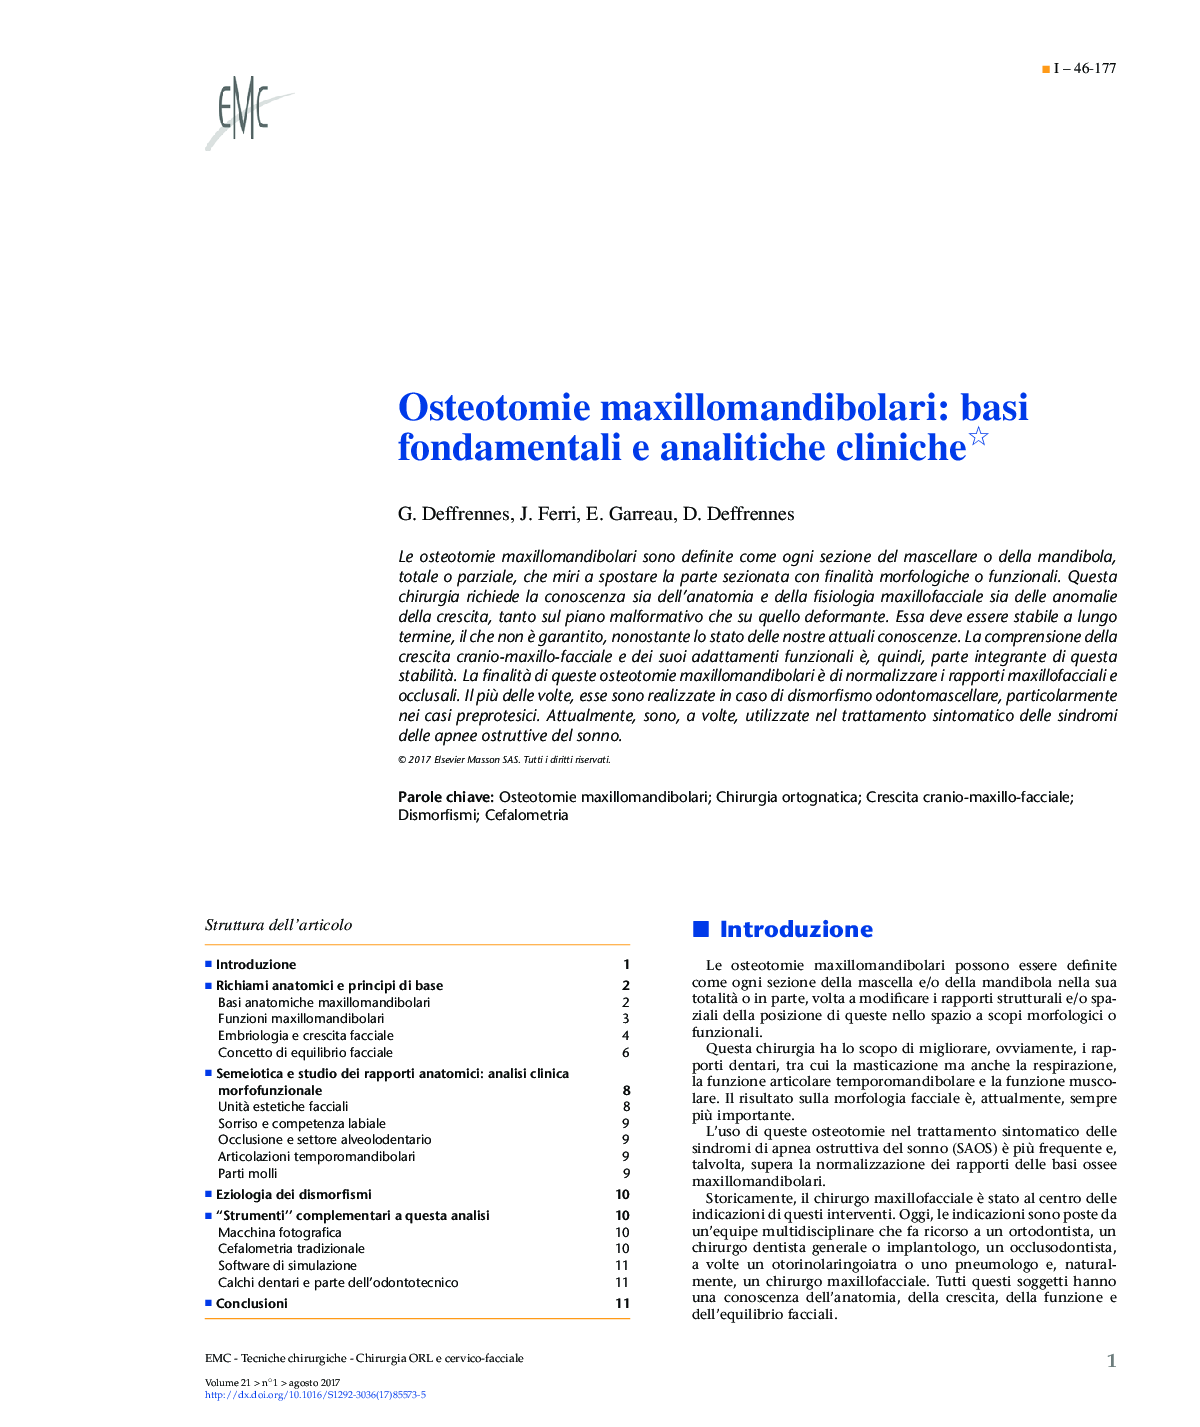 Osteotomie maxillomandibolari: basi fondamentali e analitiche cliniche